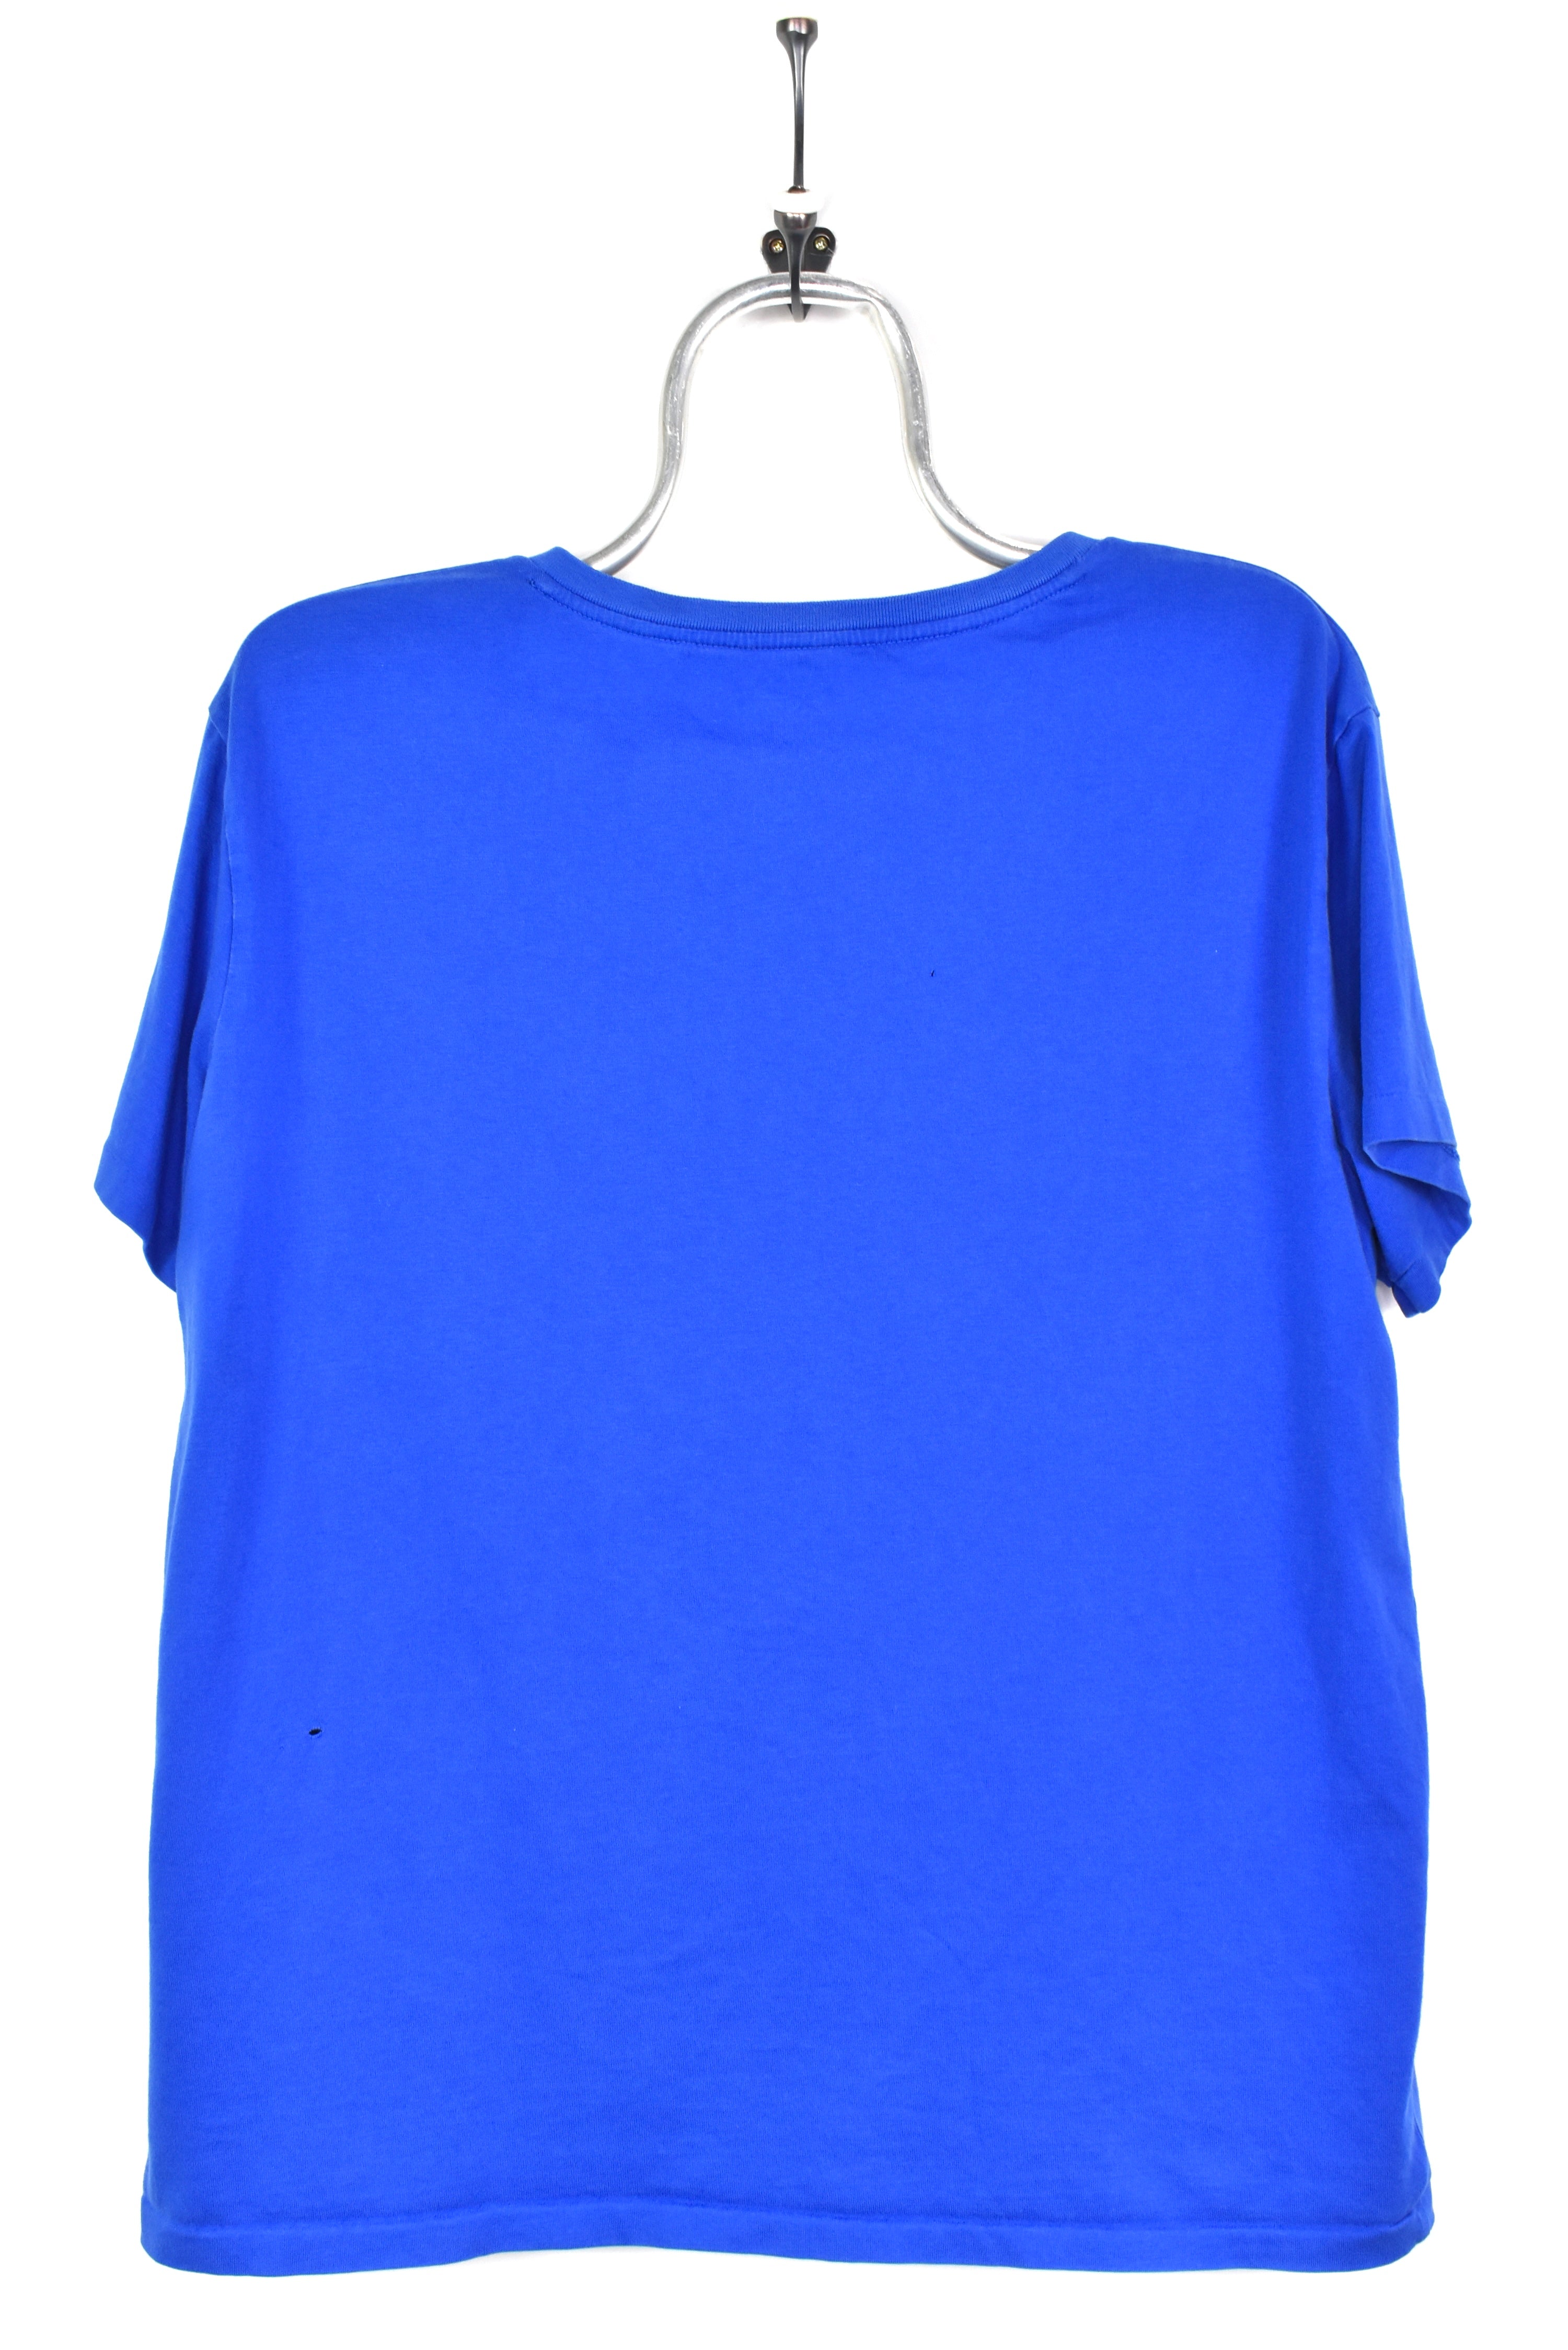 VINTAGE WOMEN'S RALPH LAUREN EMBROIDERED BLUE T-SHIRT | XL RALPH LAUREN